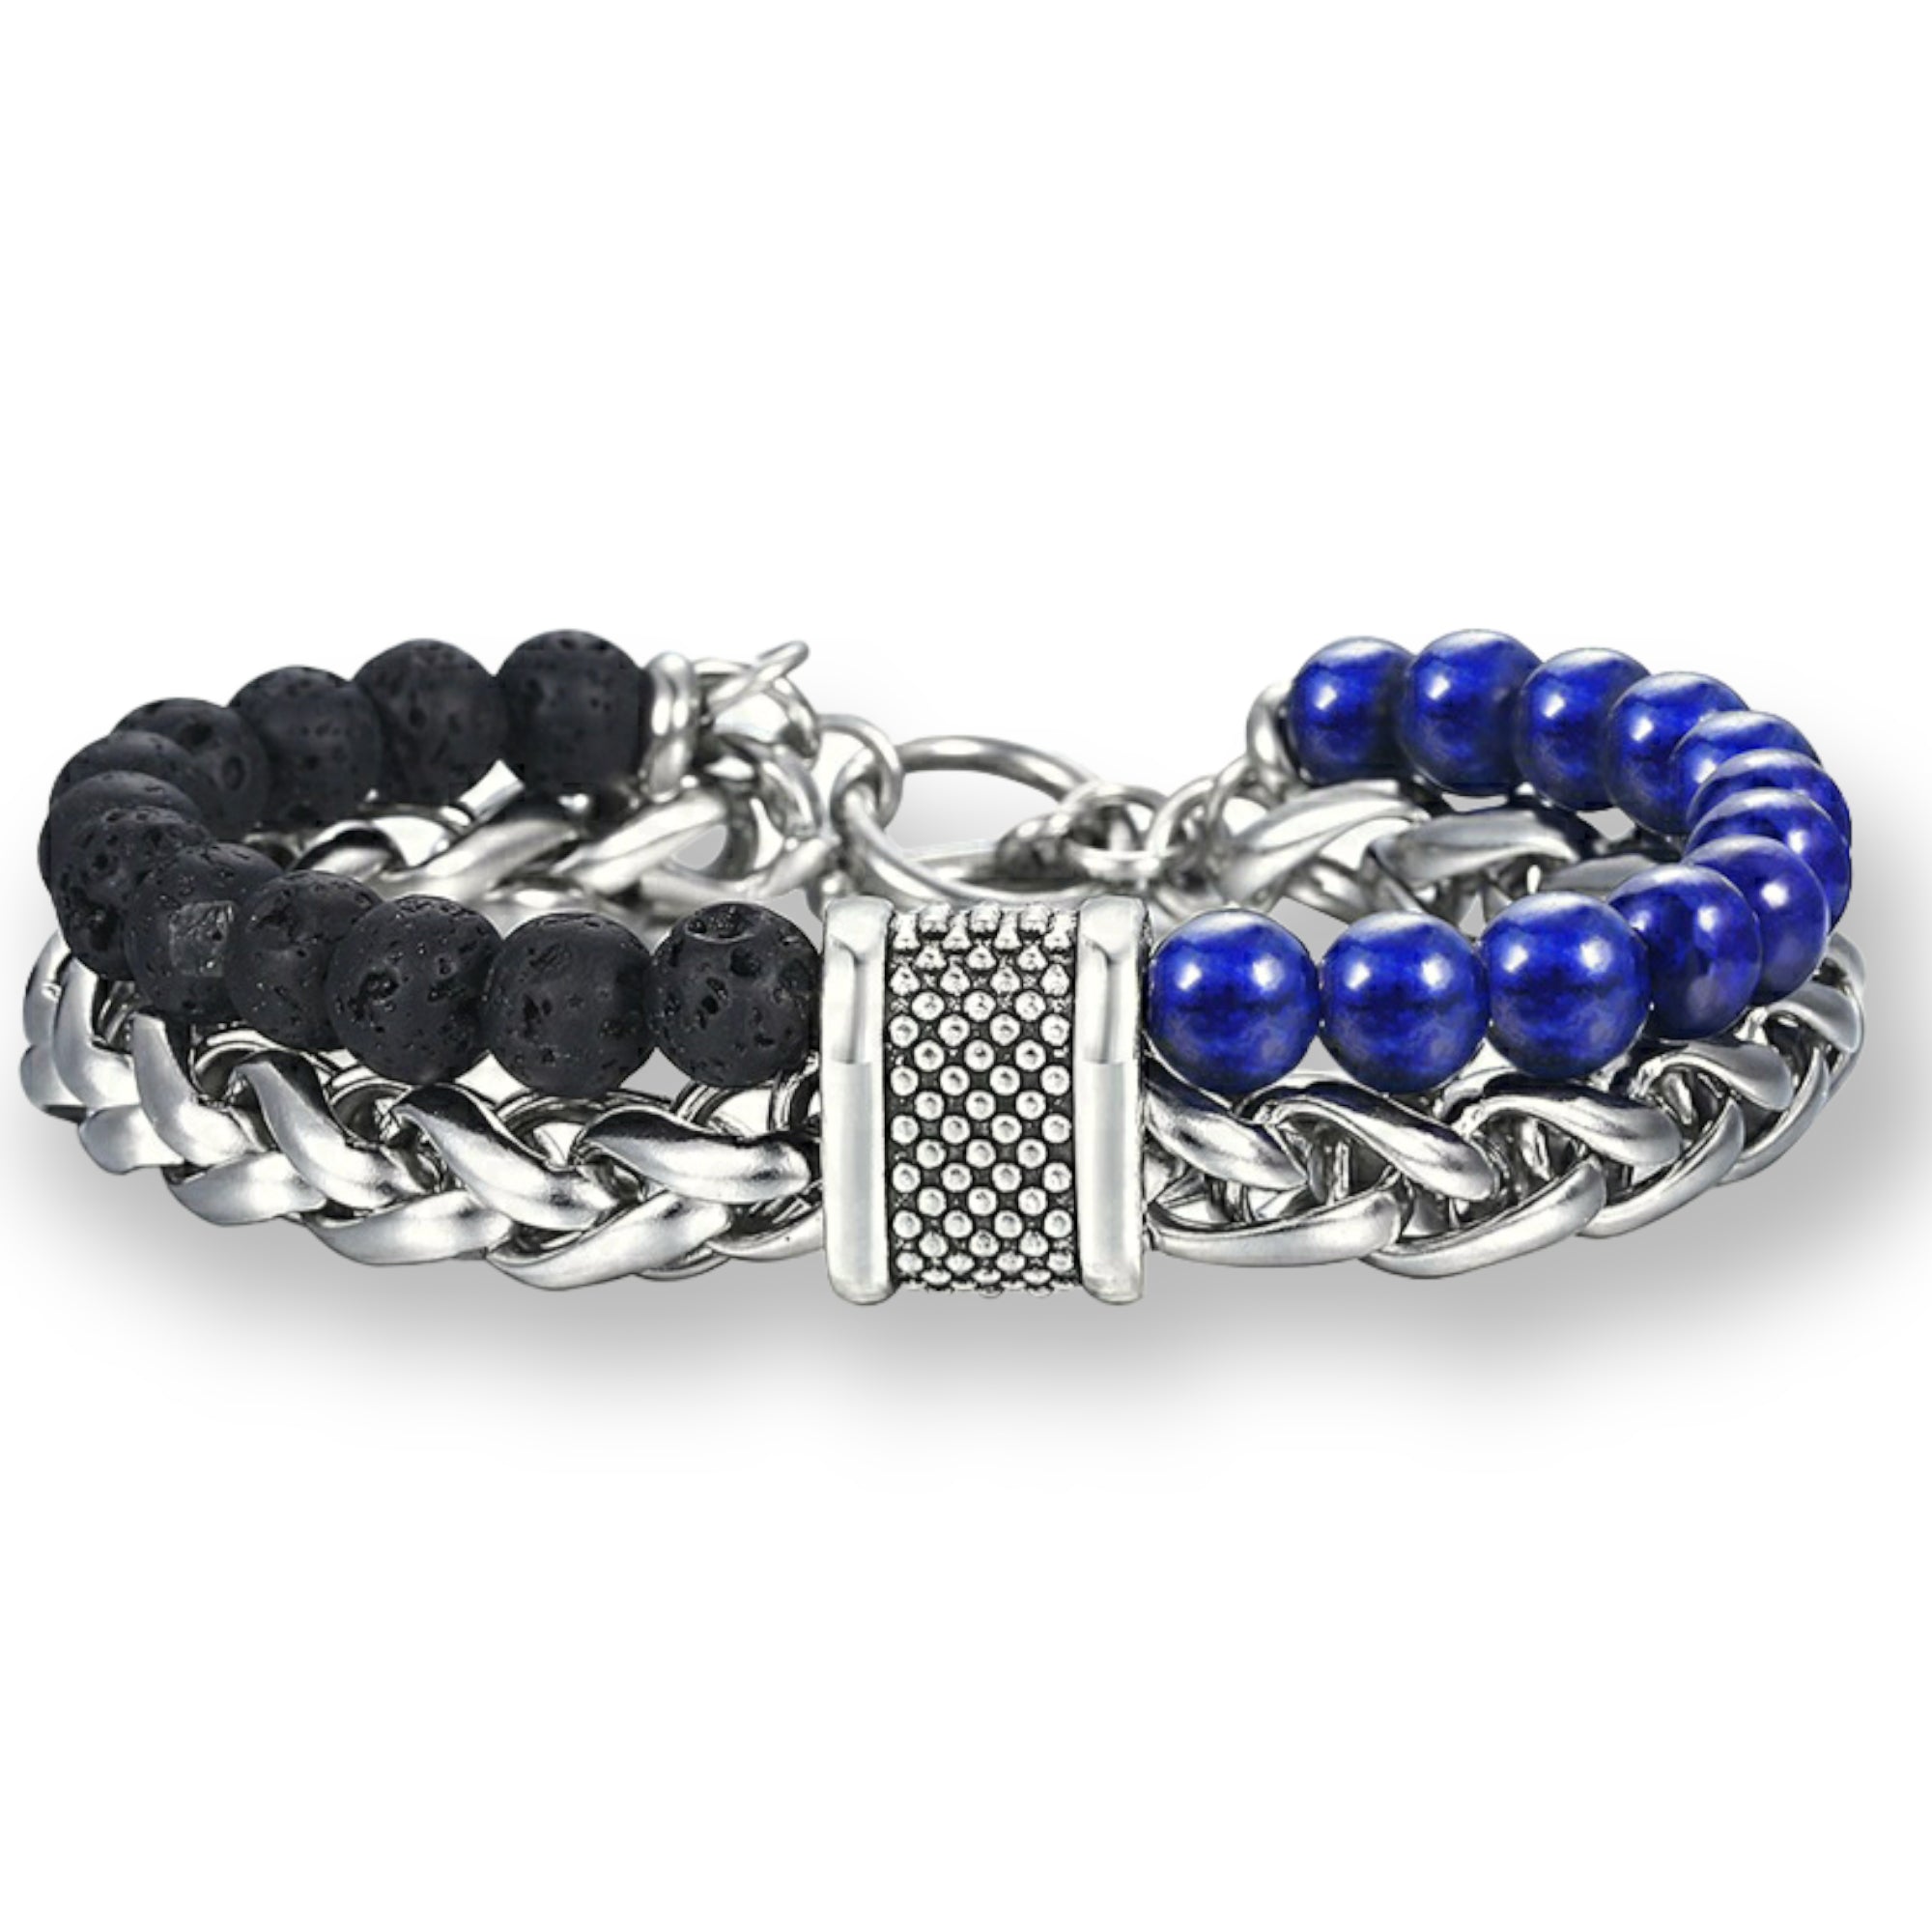 Buy 200+ Women's Bracelets Online